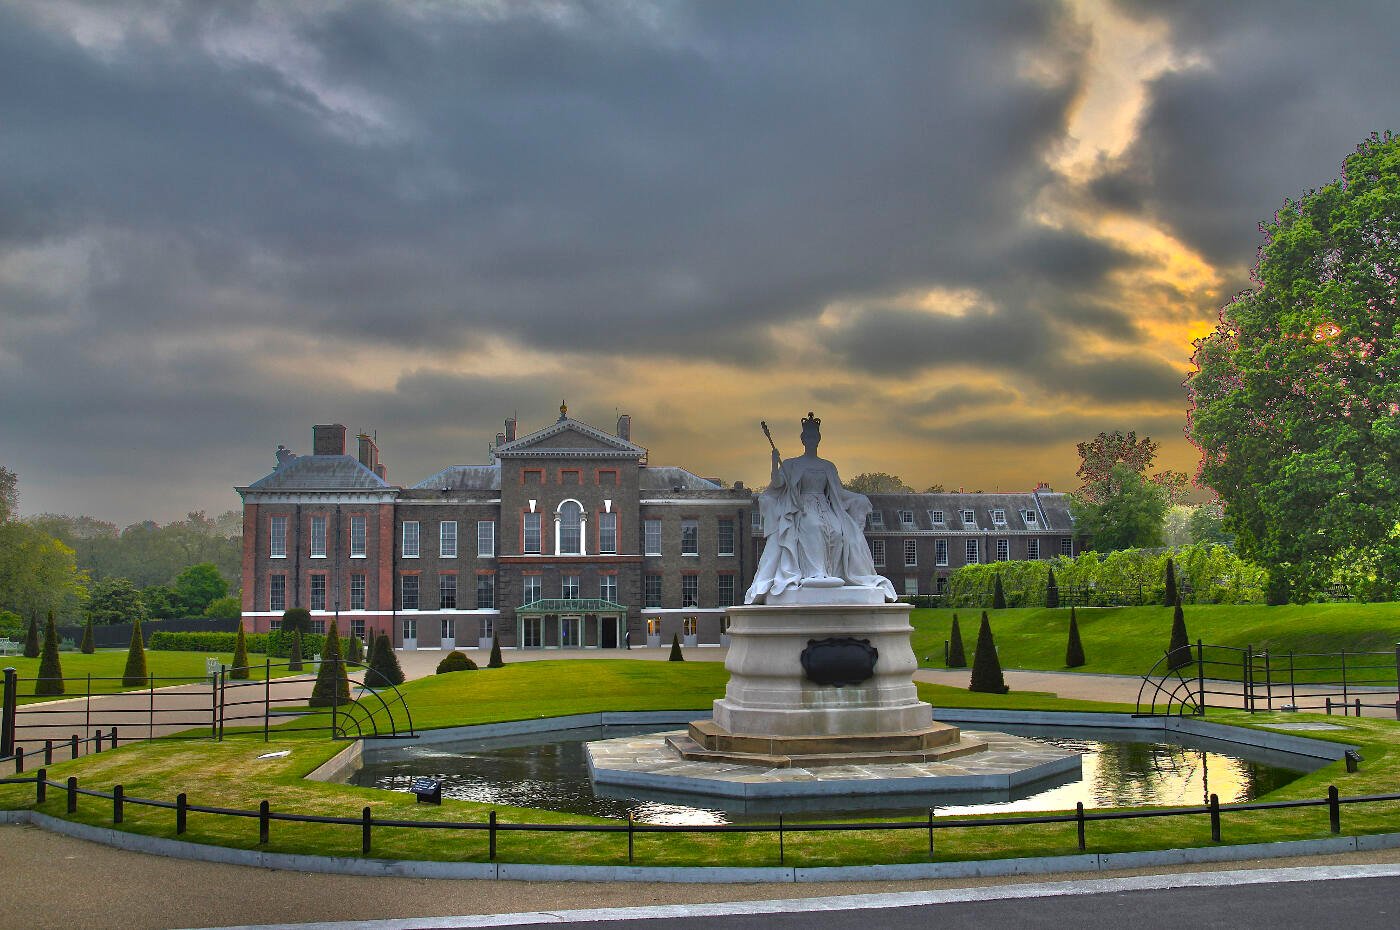 Kensington Palace and Gardens.